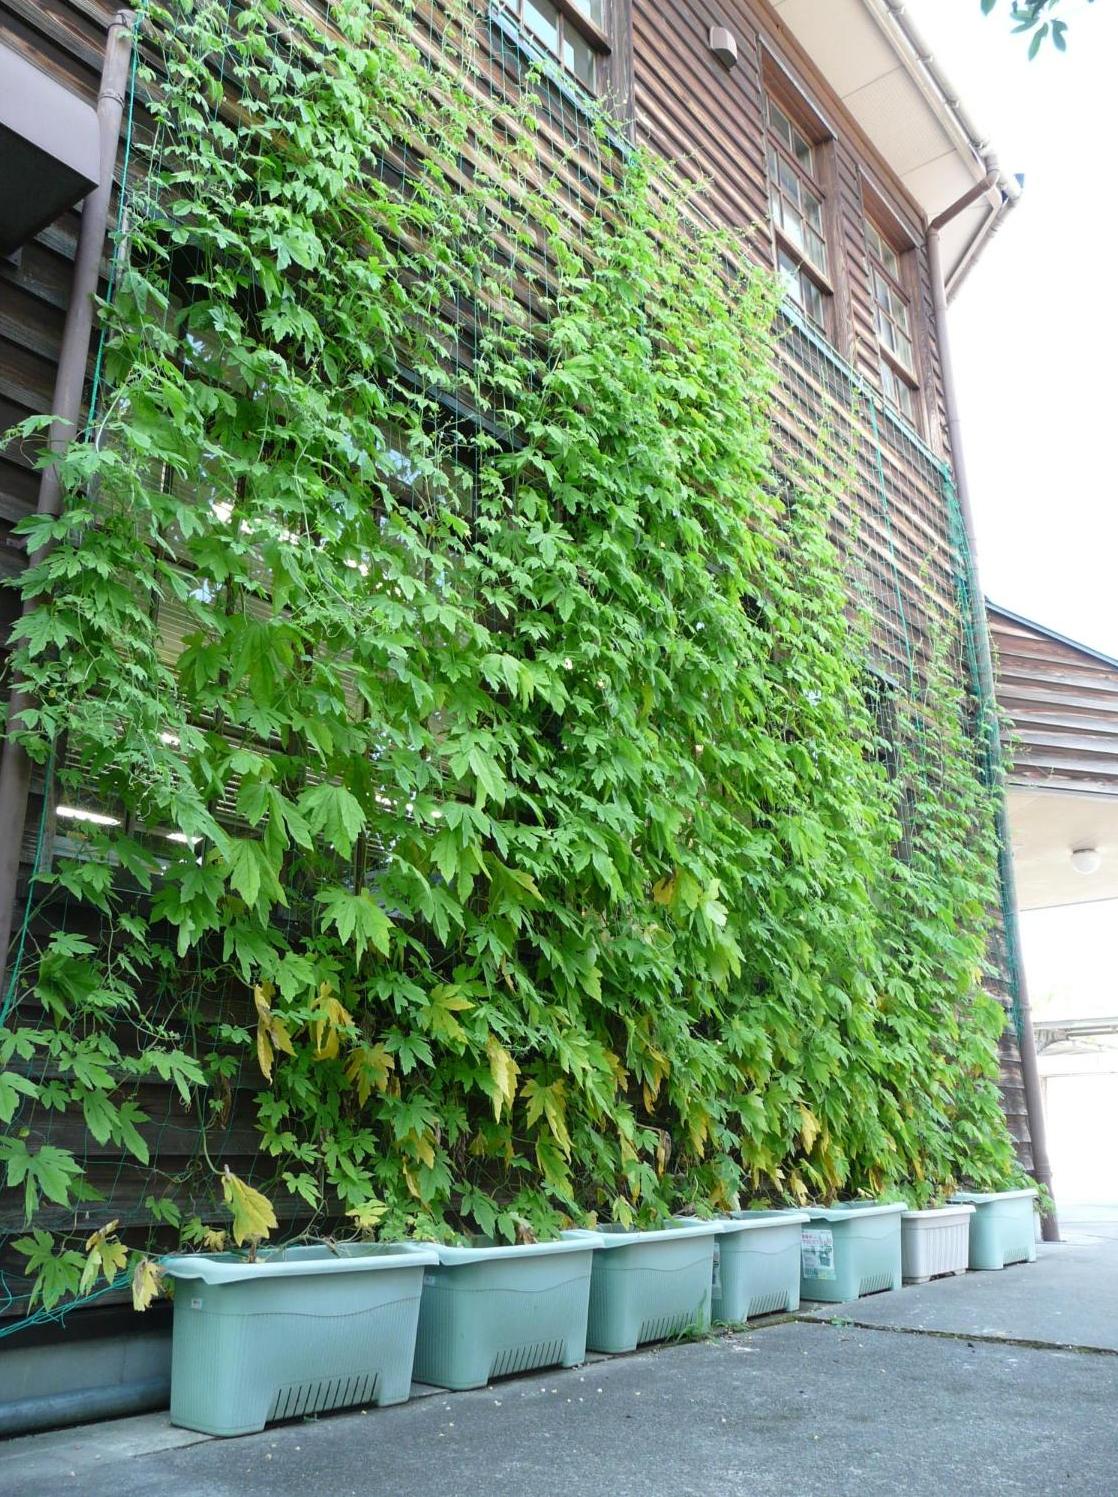 建物側面に緑色の植物を植え、グリーンカーテンが窓を覆っている写真